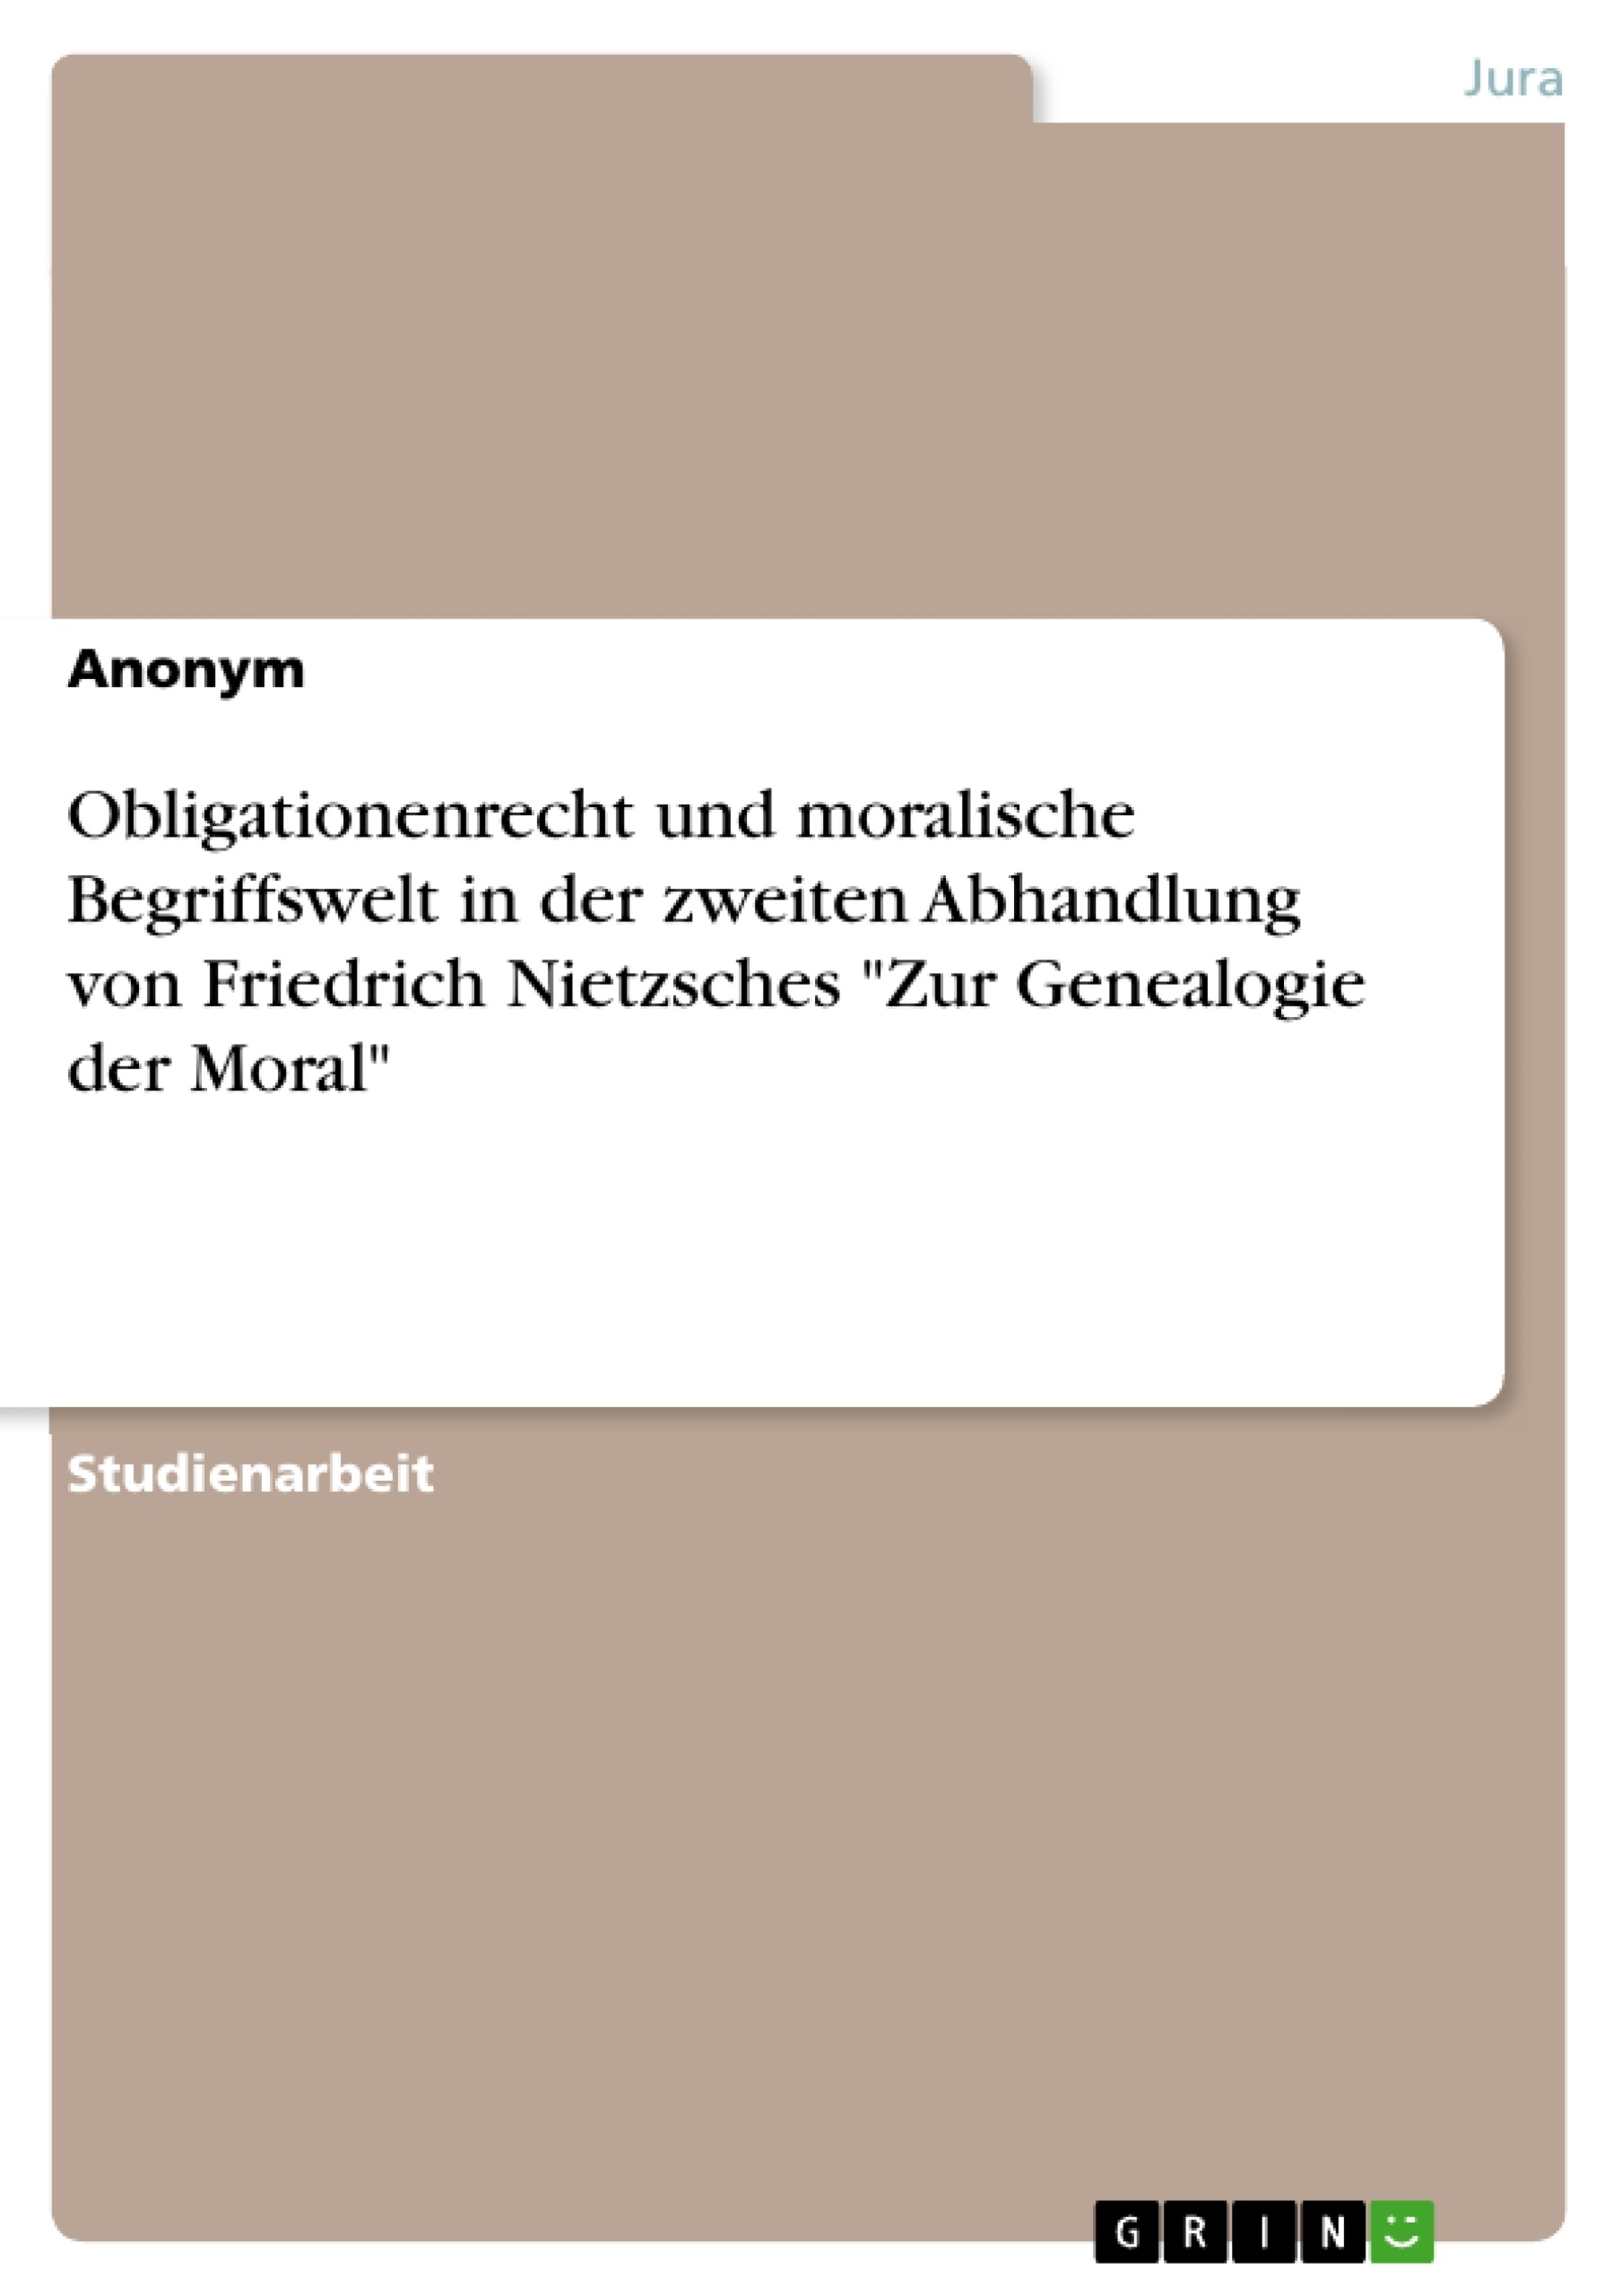 Título: Obligationenrecht und moralische Begriffswelt in der zweiten Abhandlung von Friedrich Nietzsches "Zur Genealogie der Moral"